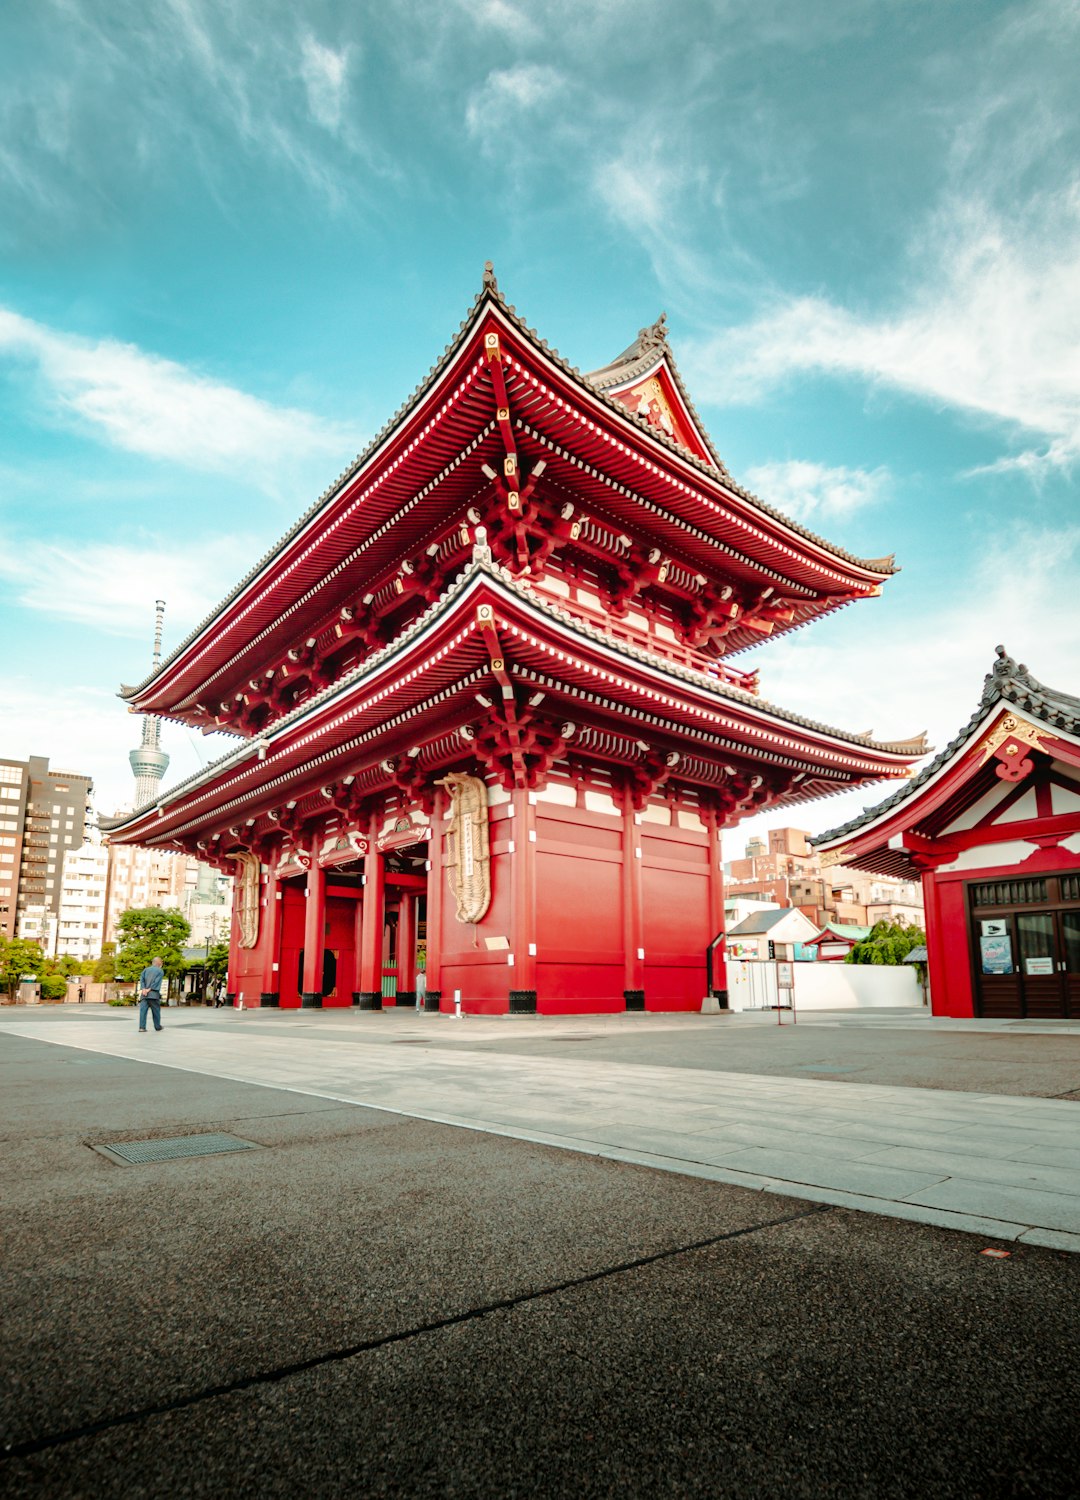 travelers stories about Landmark in Asakusa, Japan